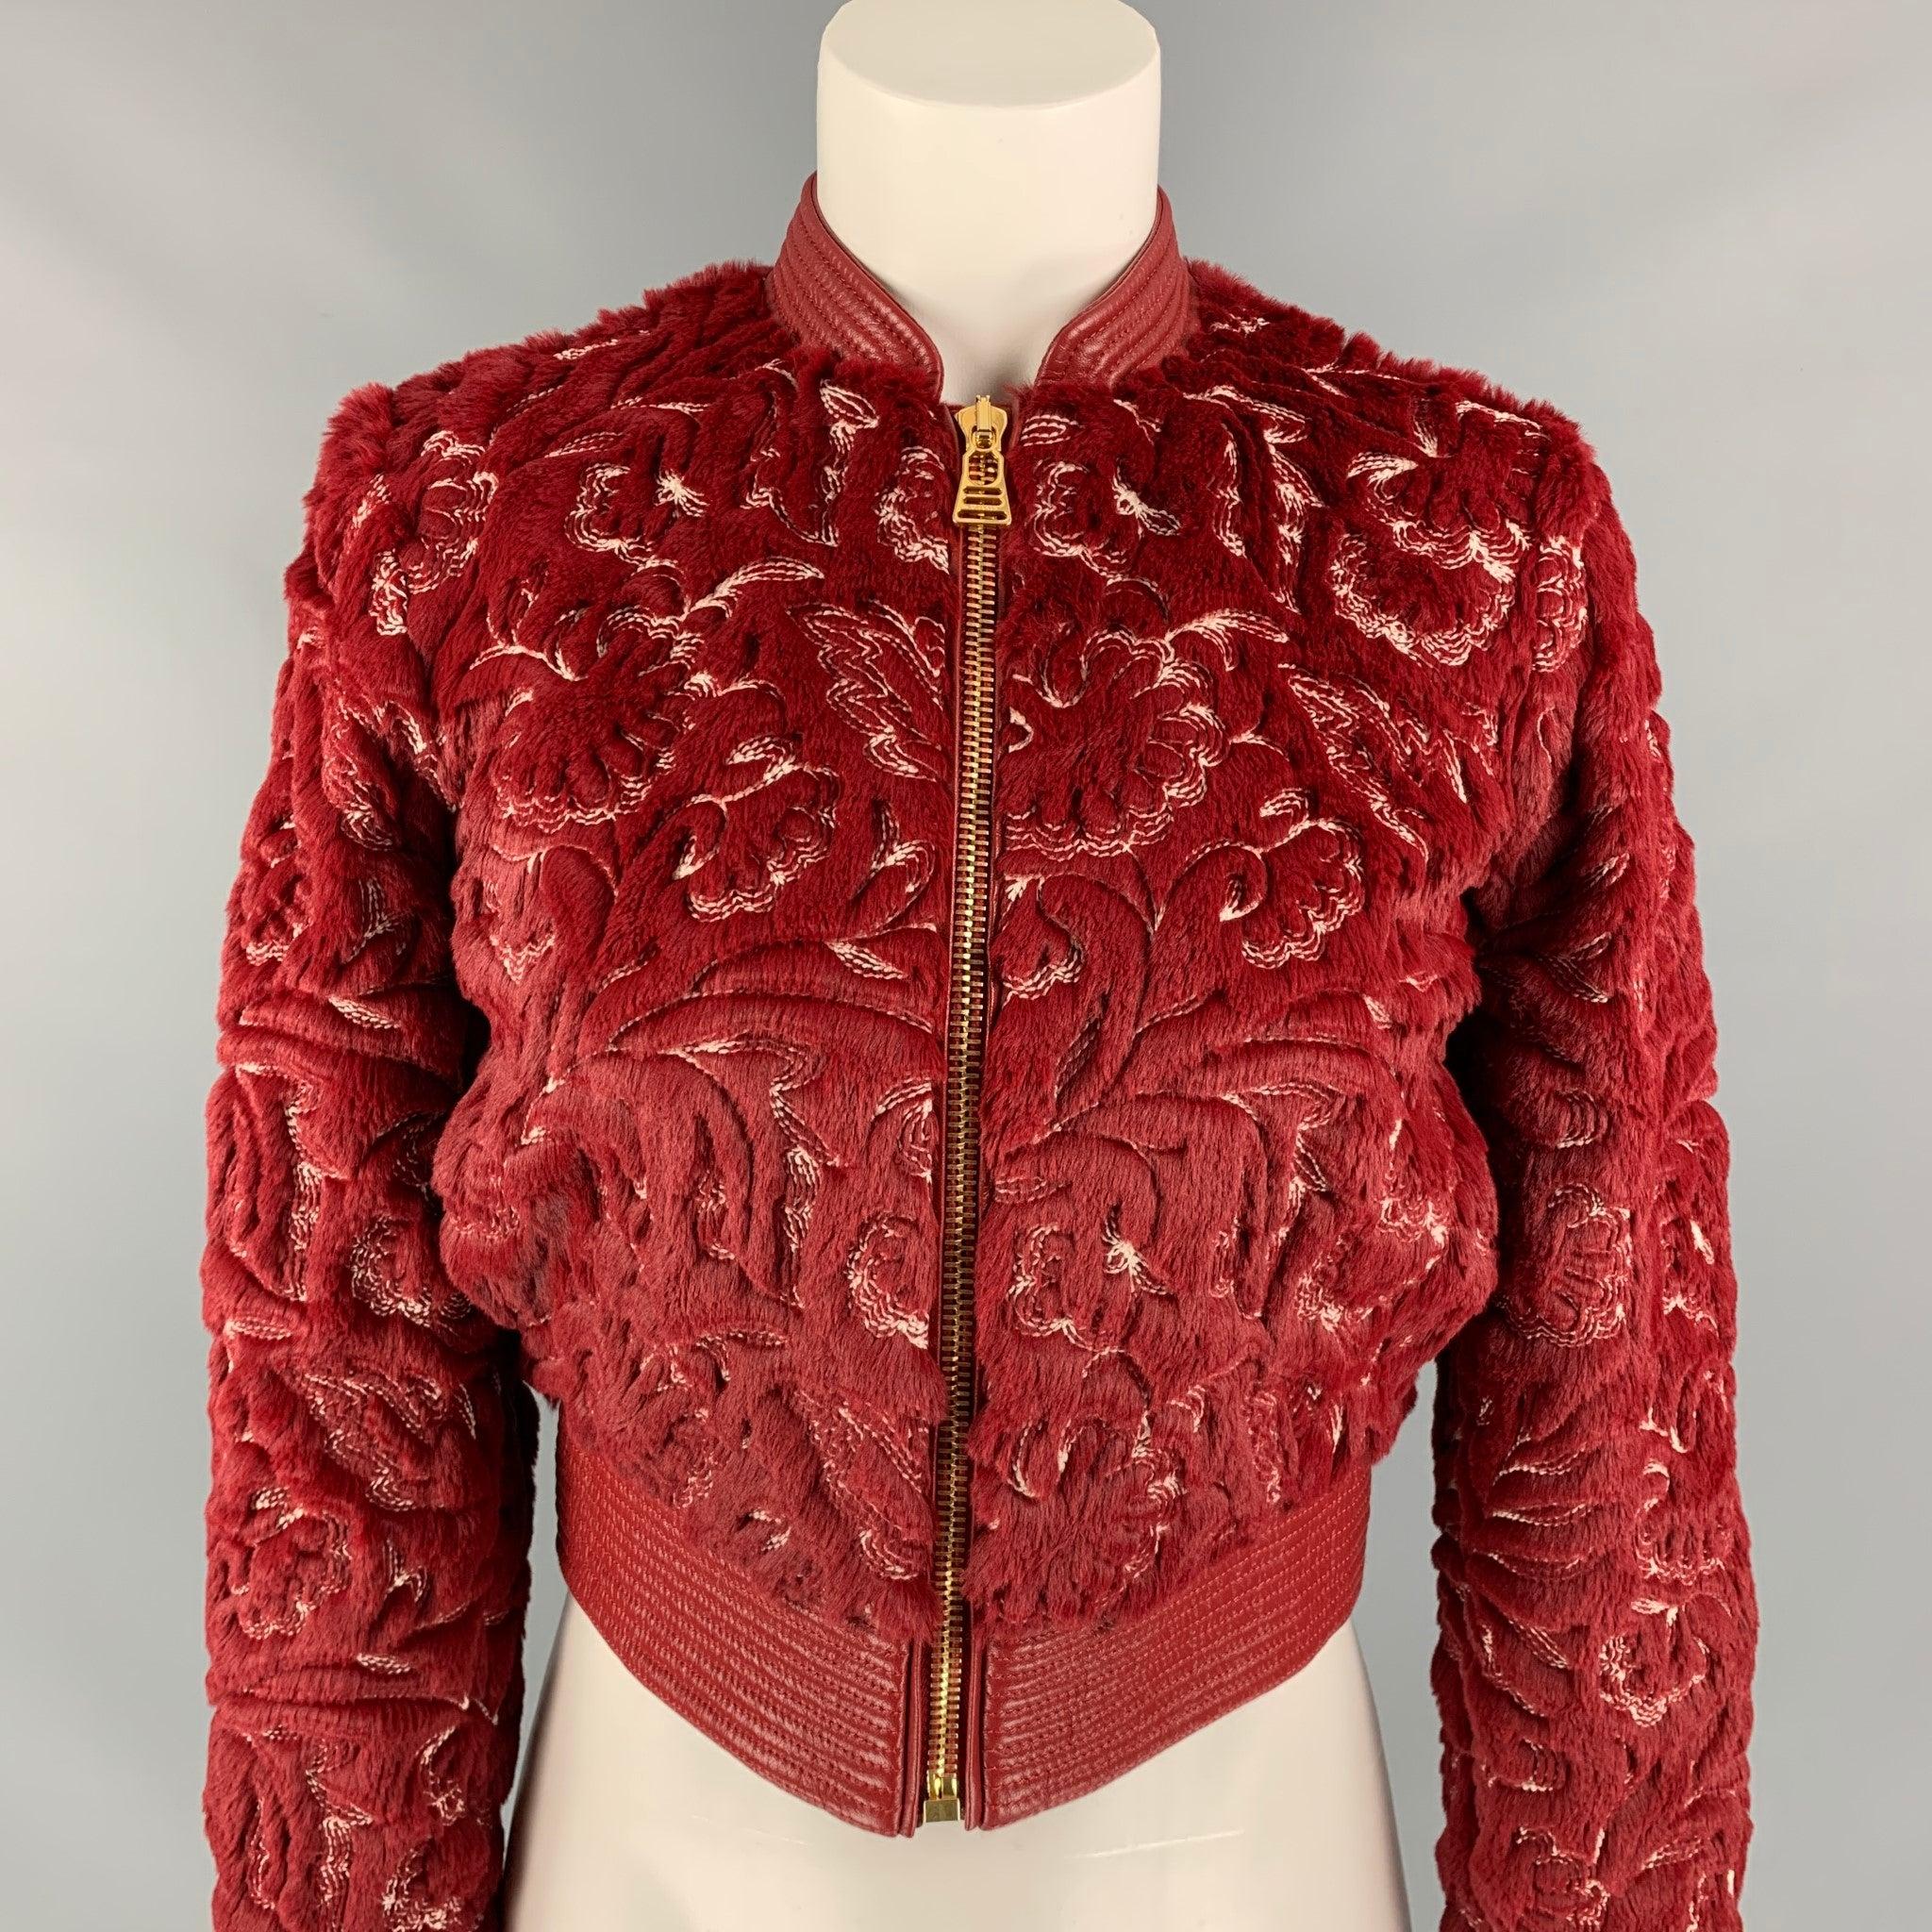 LA PERLA Jacke aus Polyester/Baumwolle mit rot-weißem Kunstpelz und Innenfutter im Bomber-Stil, mit Lederbesatz, durchgehend bestickten Details, geschlitzten Taschen und einem Reißverschluss mit goldener Spitze.
Neu mit Tags.
 

Markiert:   IT 36 /